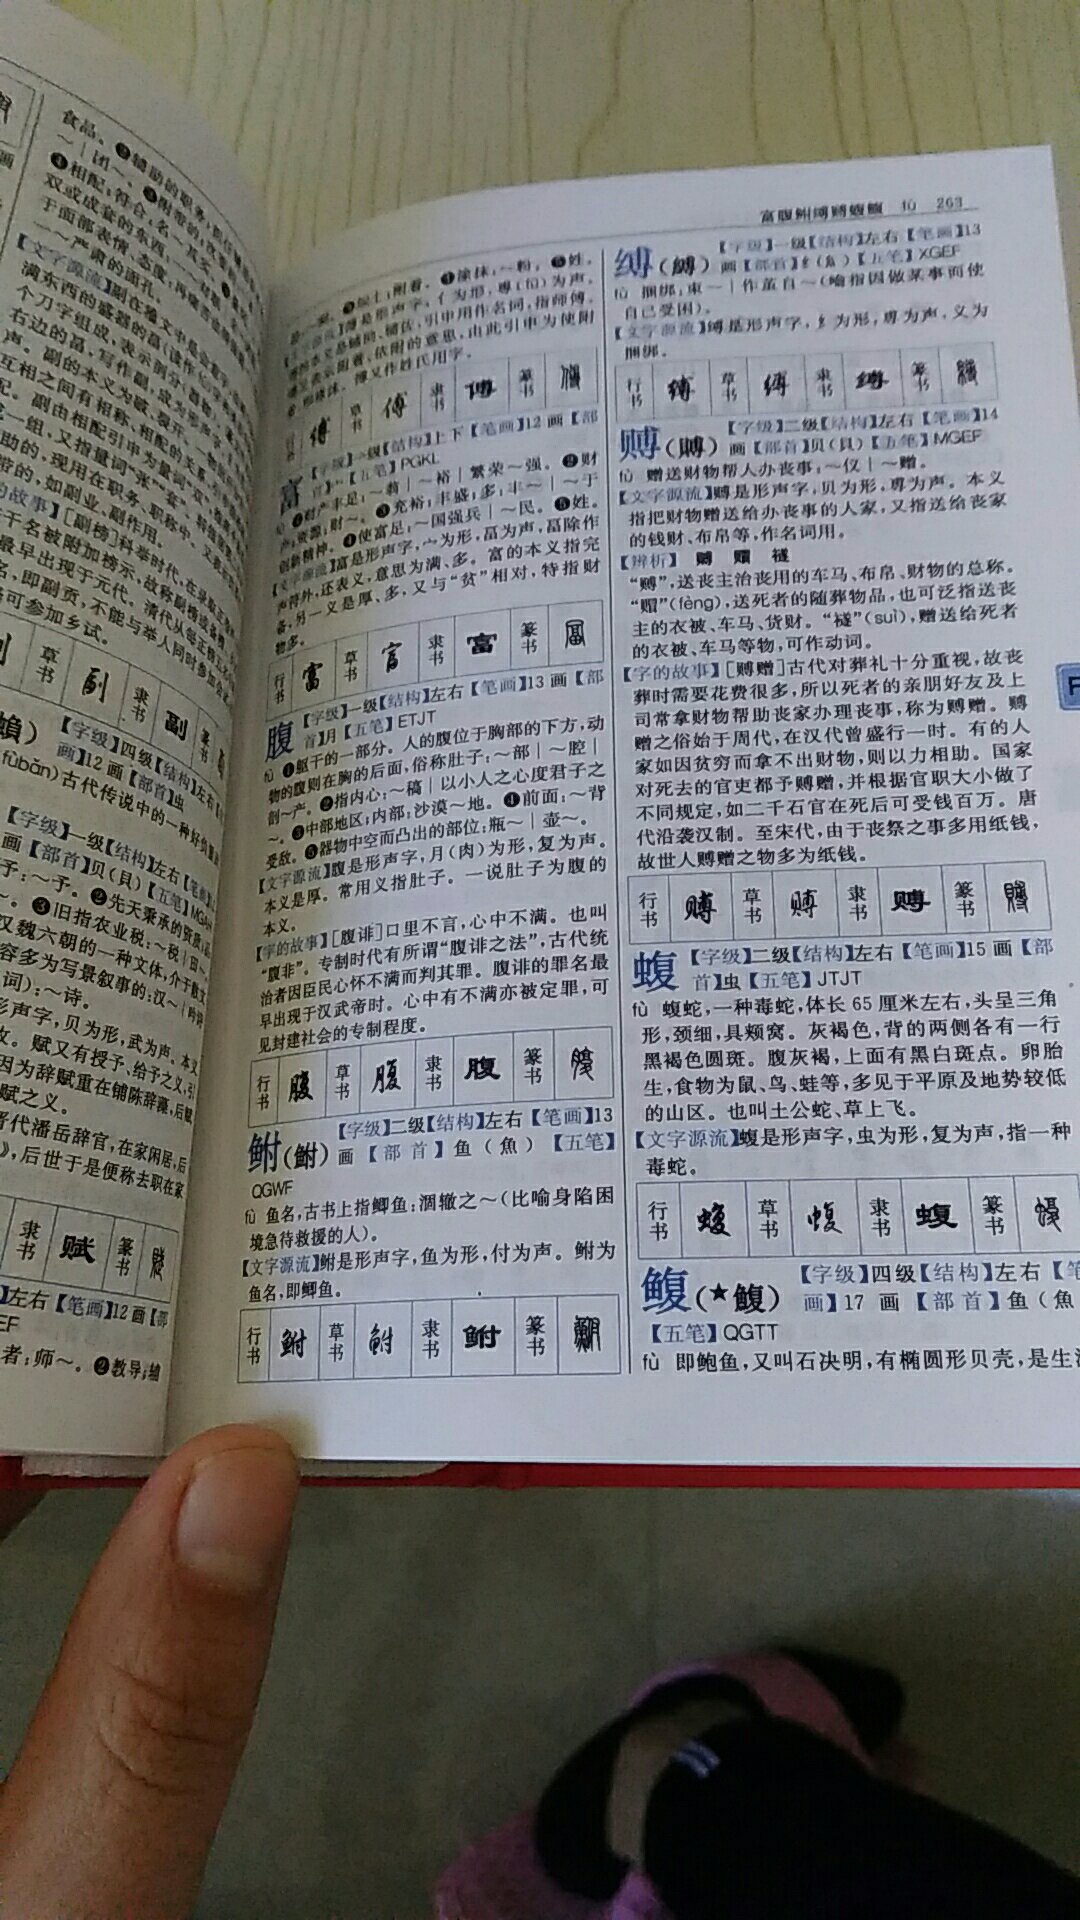 比普通的新华字典详细，能学到很多汉字知识，值得拥有，价格很合理。